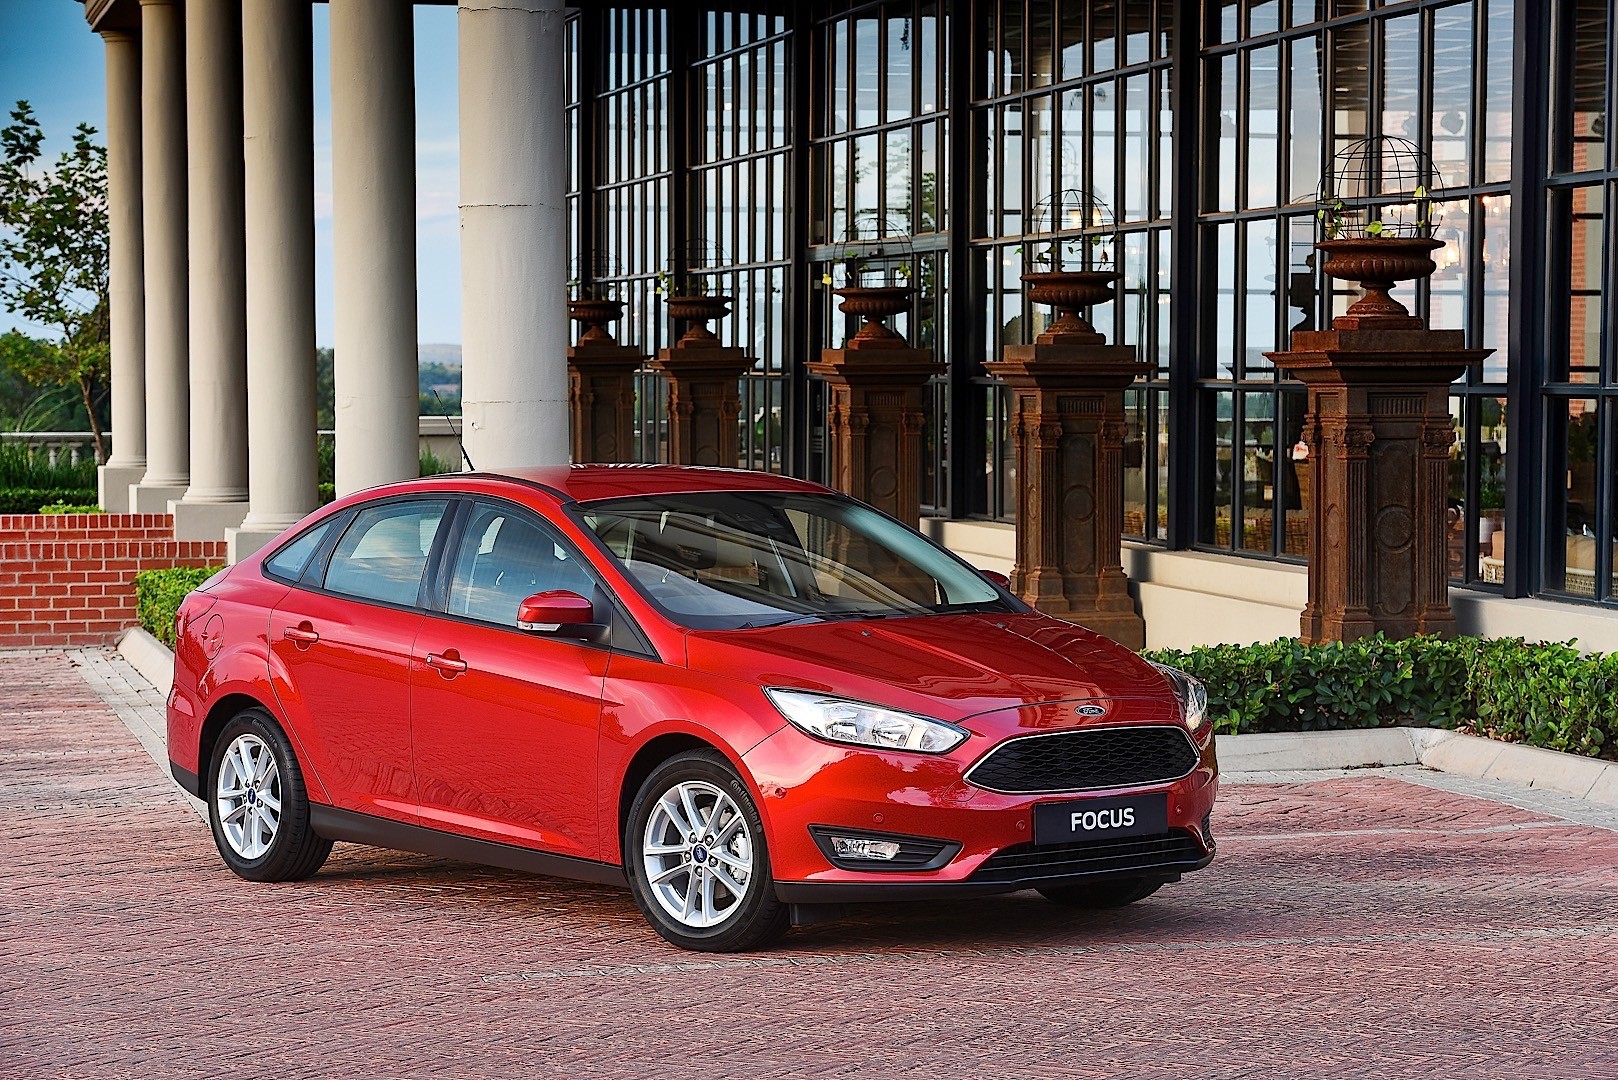 Смотреть каталог красных Ford Focus в красном цвете